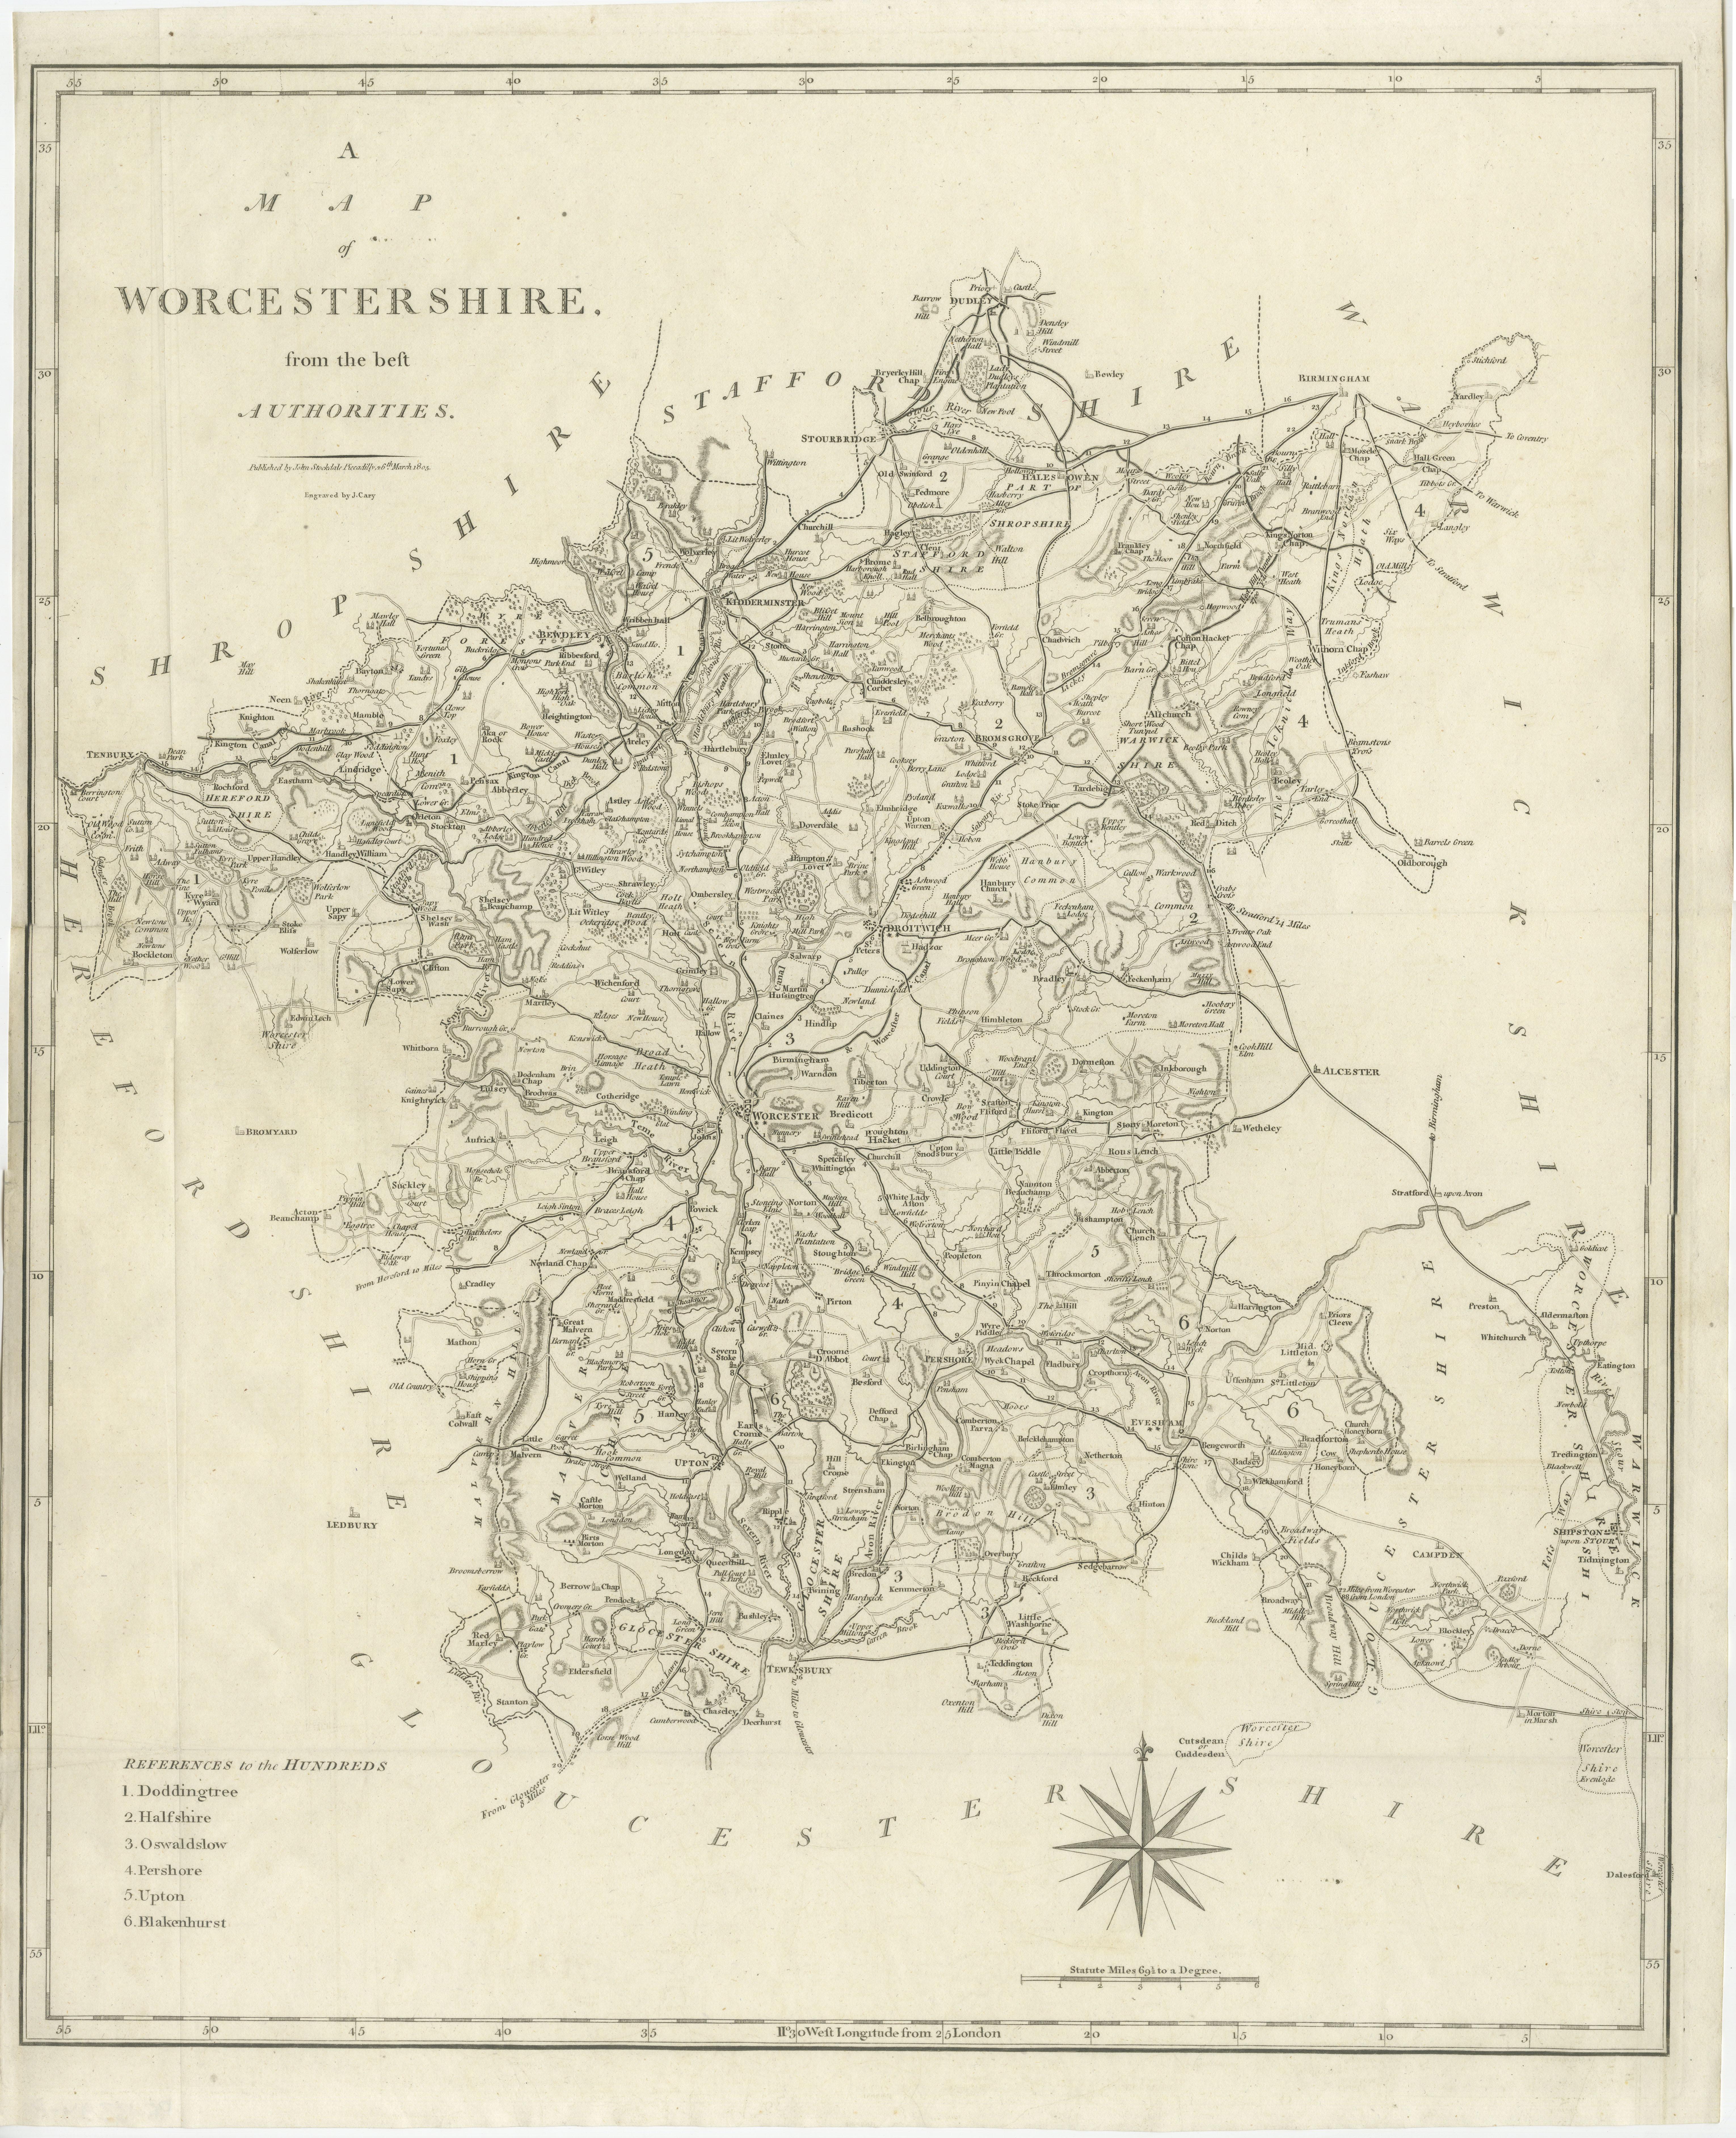 Antike Karte mit dem Titel 'A Map of Worcestershire from the best Authorities'. Original alte Grafschaftskarte von Worcestershire, England. Gestochen von John Cary's. Stammt aus dem 